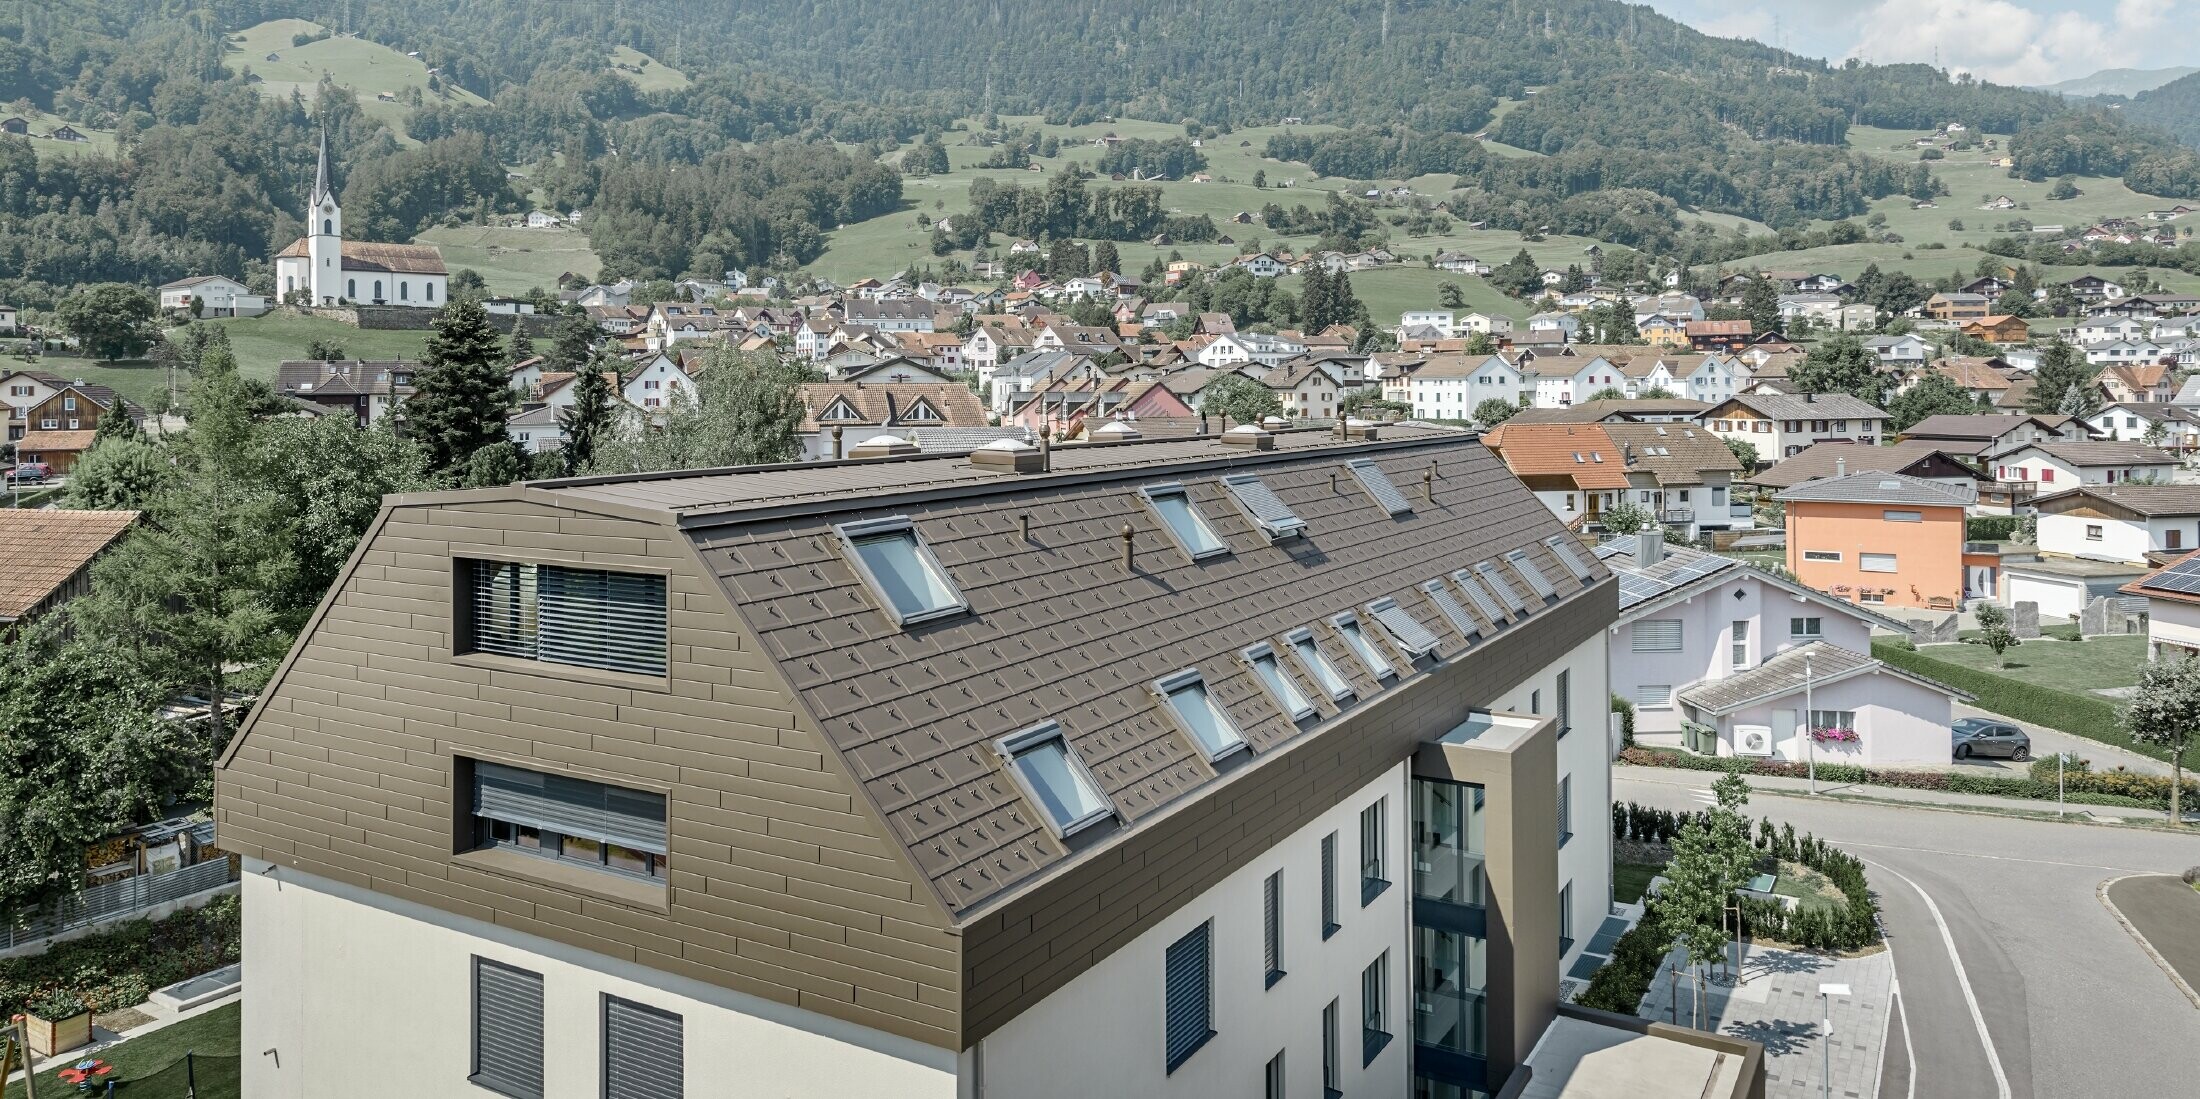 Dachgeschoßausbau des Wohnhauses in Wangs mit braunen Alu-Paneelen von PREFA für Dach und Fassade.